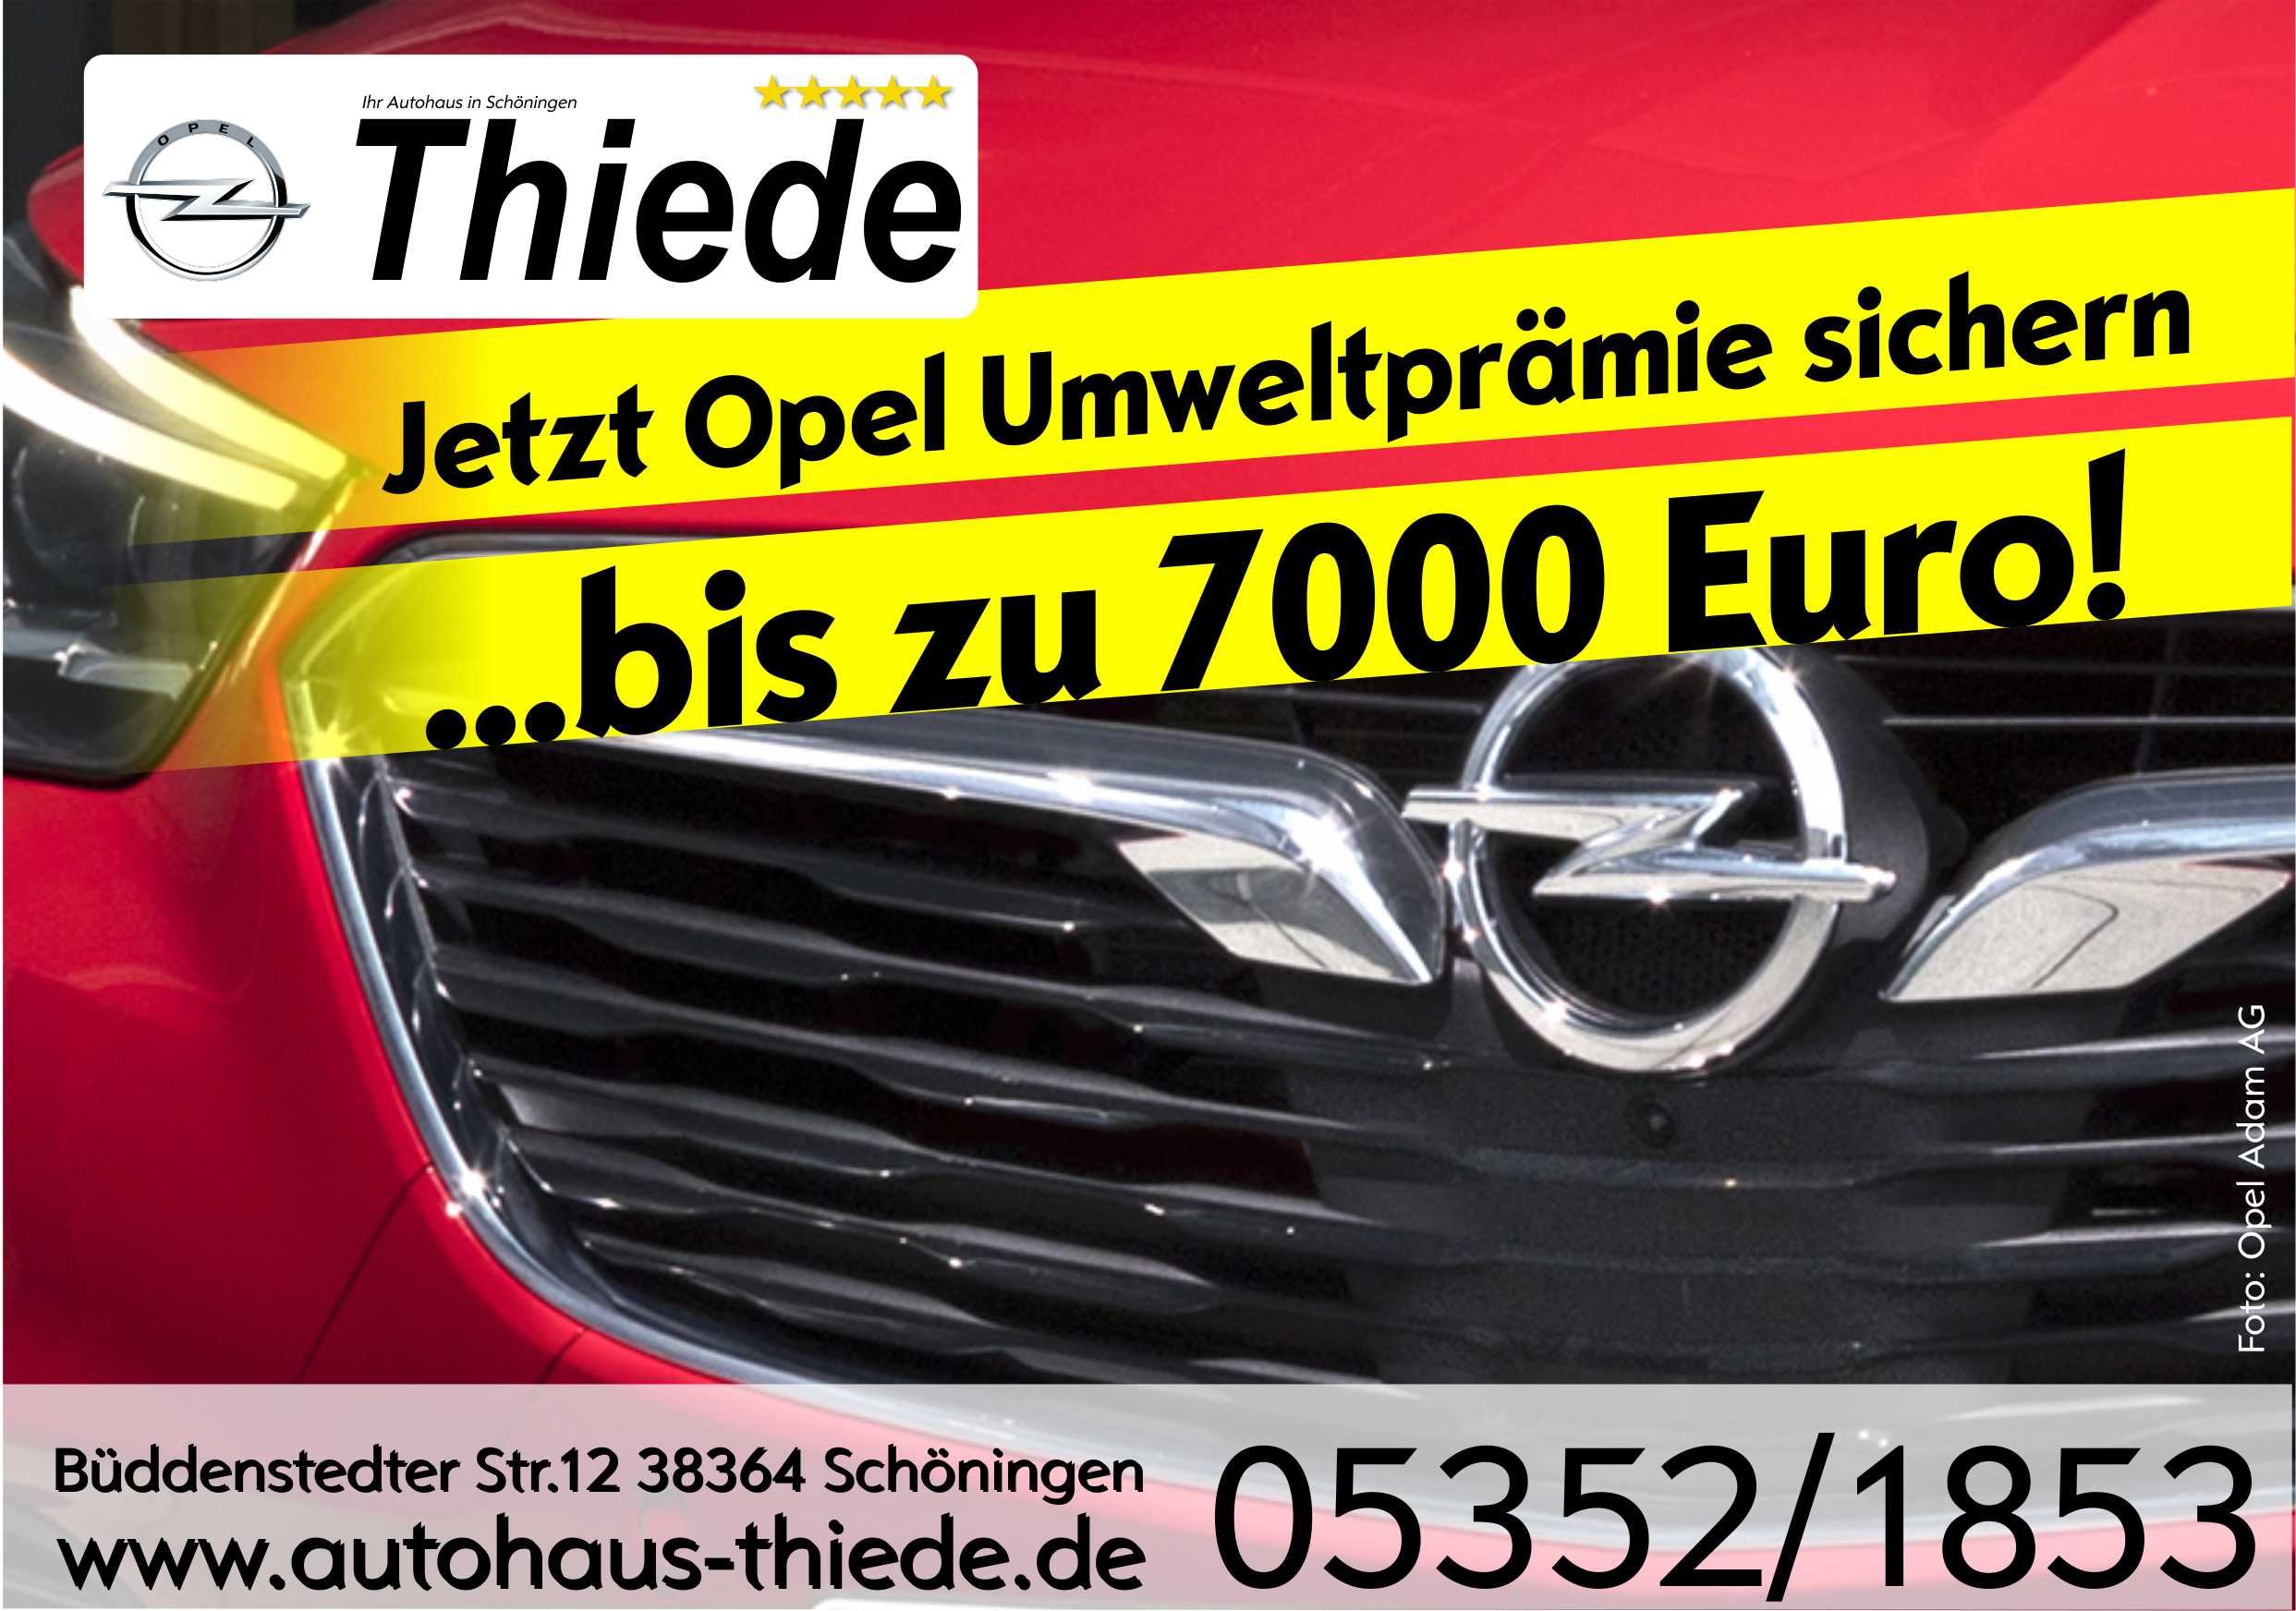 Opel Umweltprämie Bonus für Neuwagen